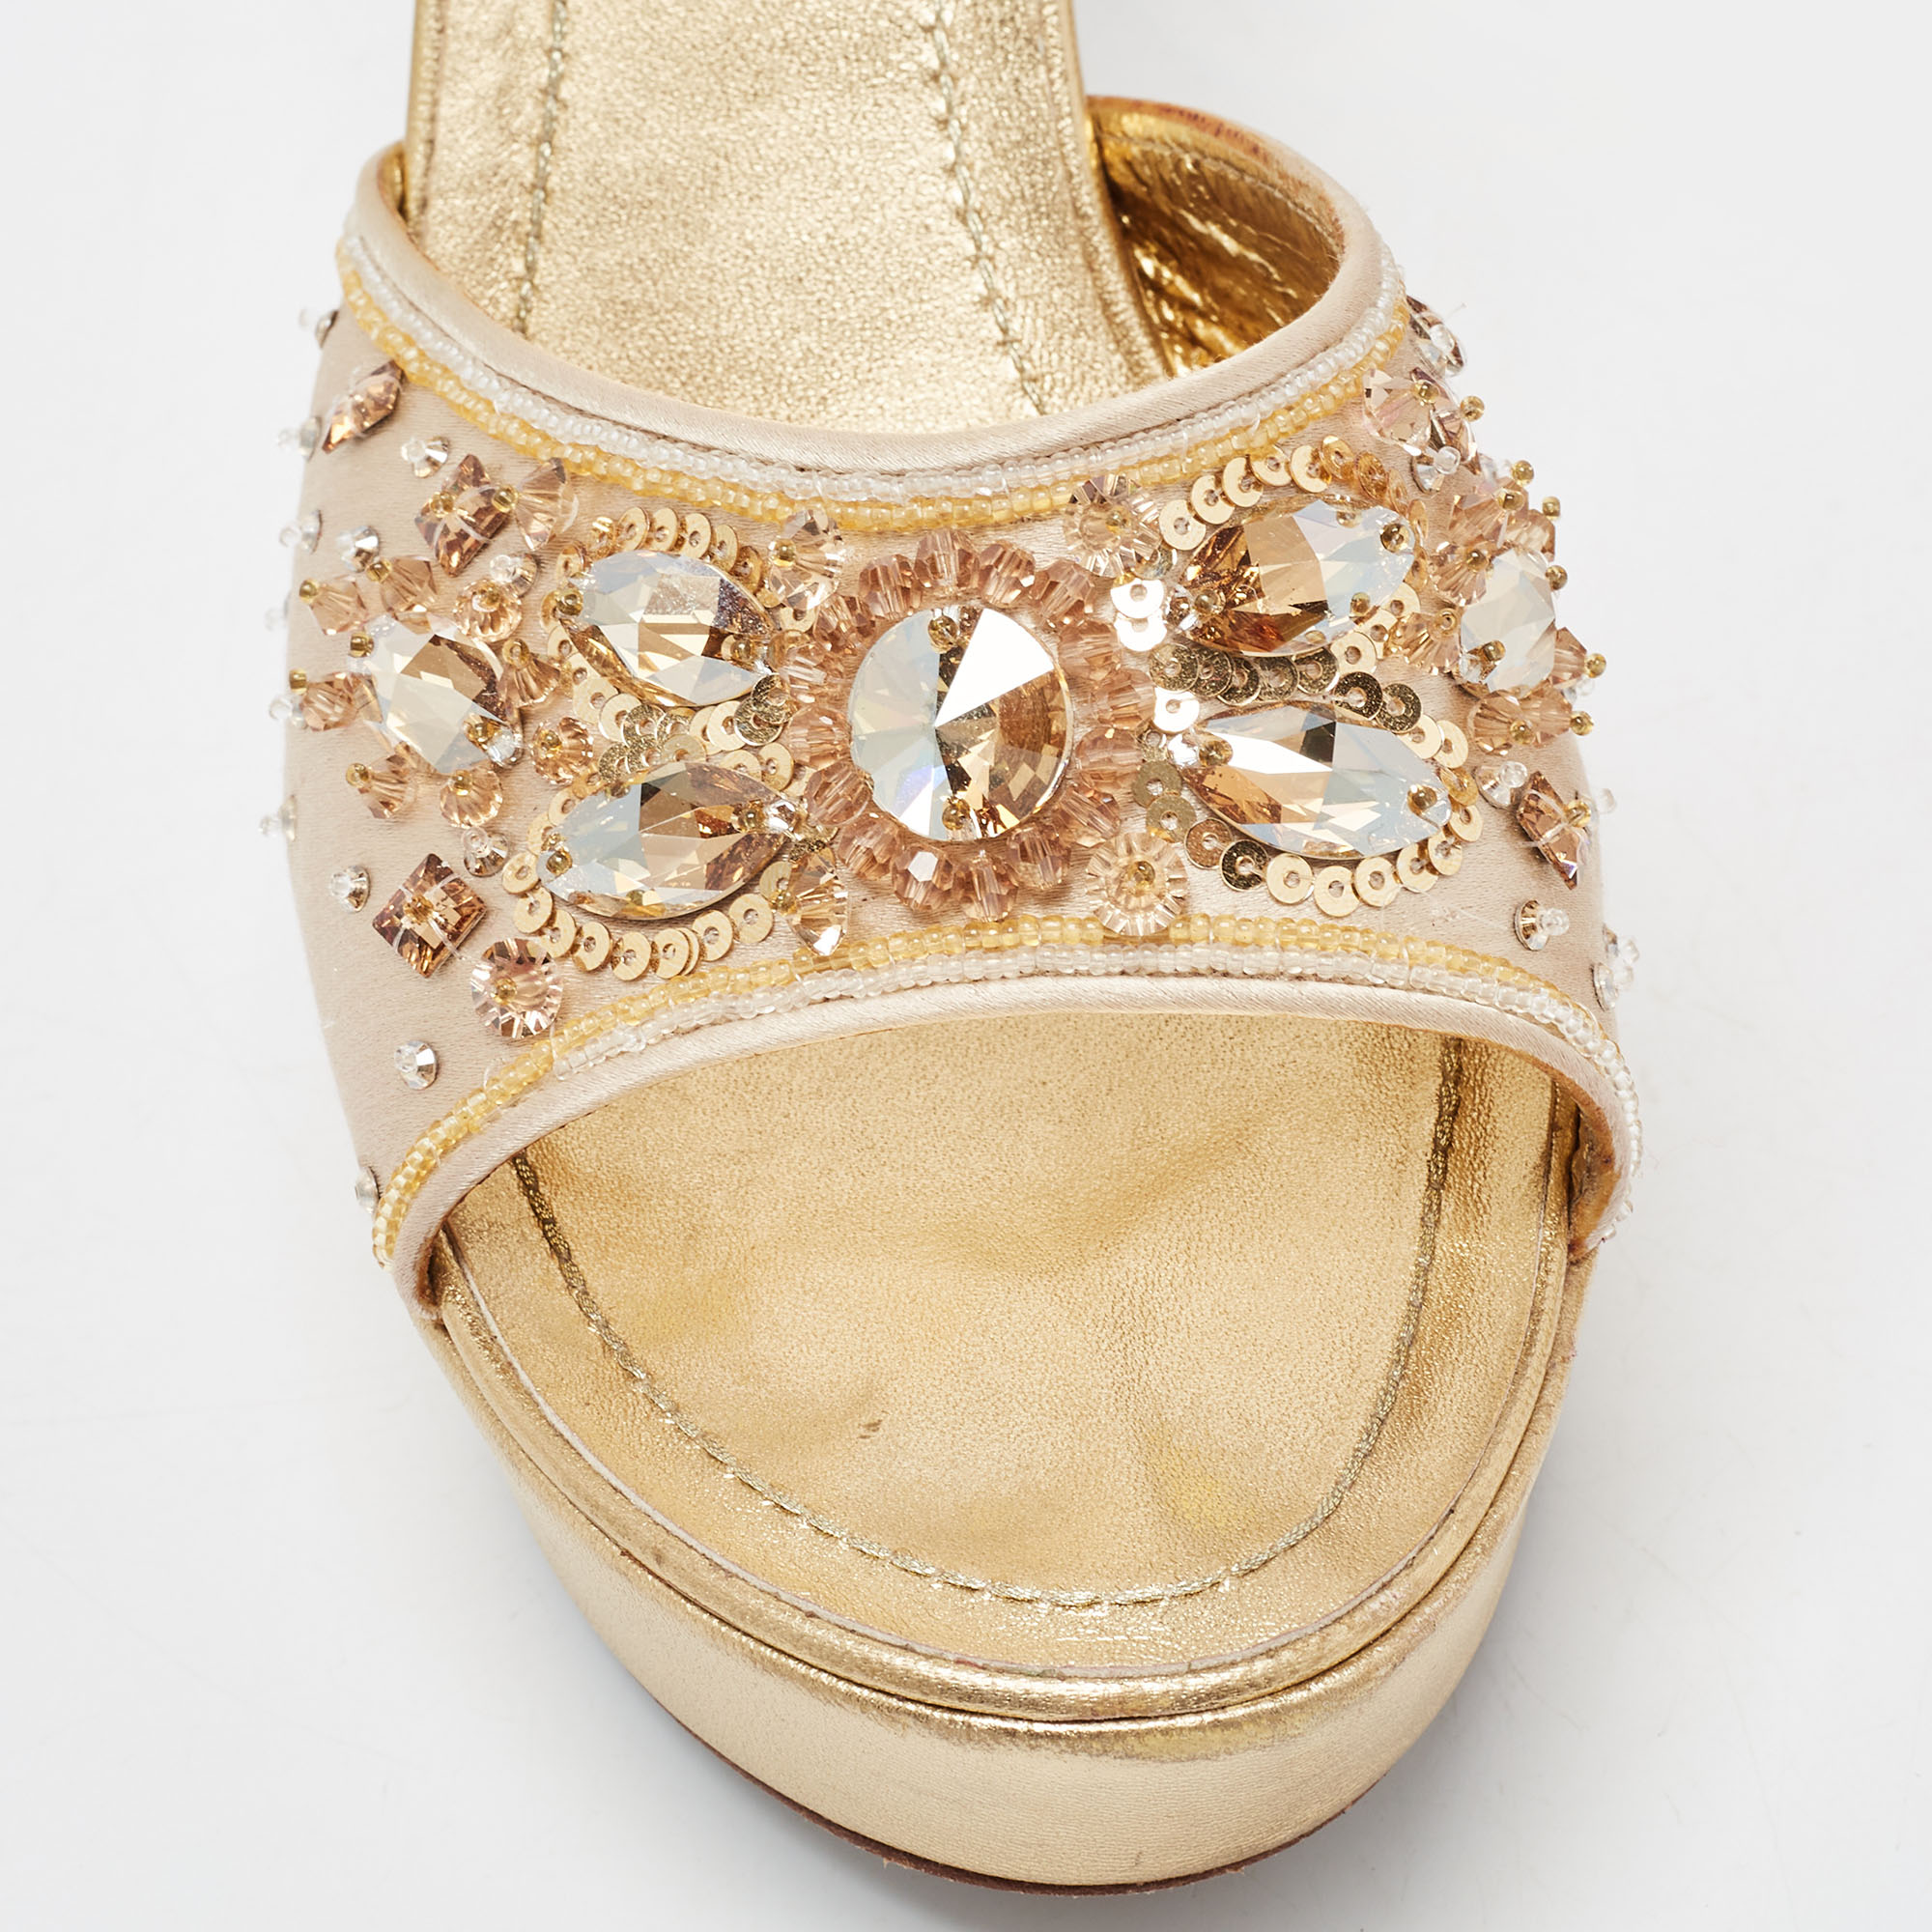 René Caovilla Metallic Gold Leather Embellished Slide Sandals Size 37.5